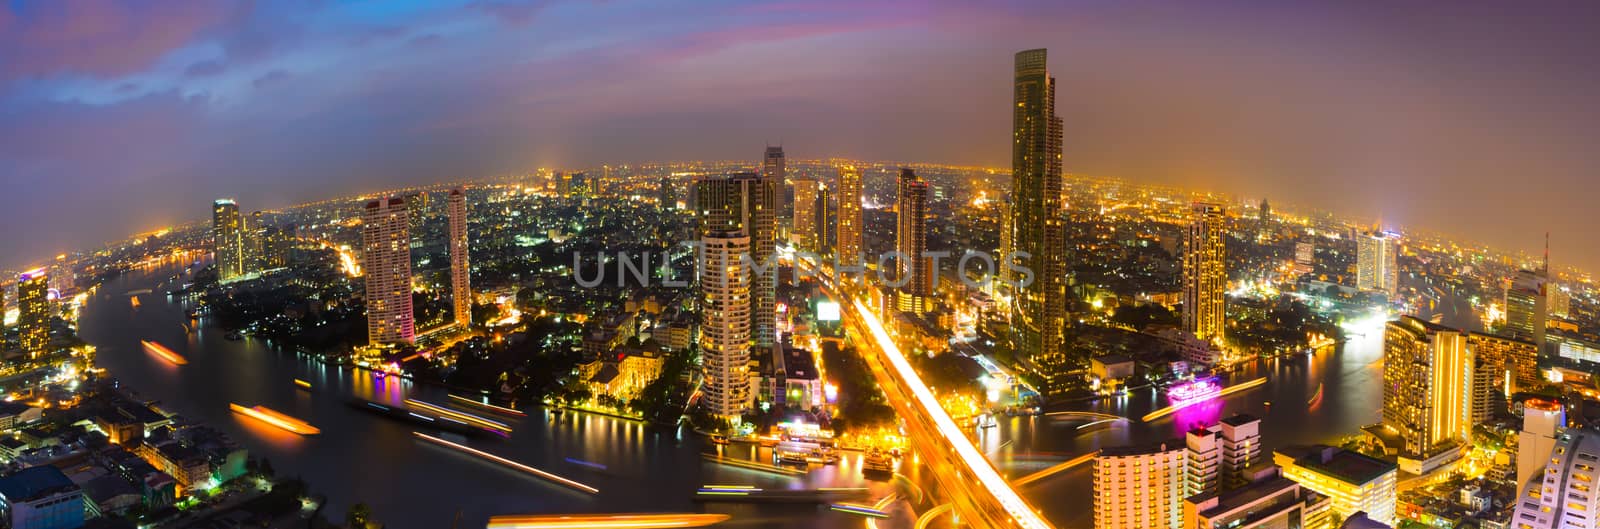 Panorama view of Bangkok city at nighttime